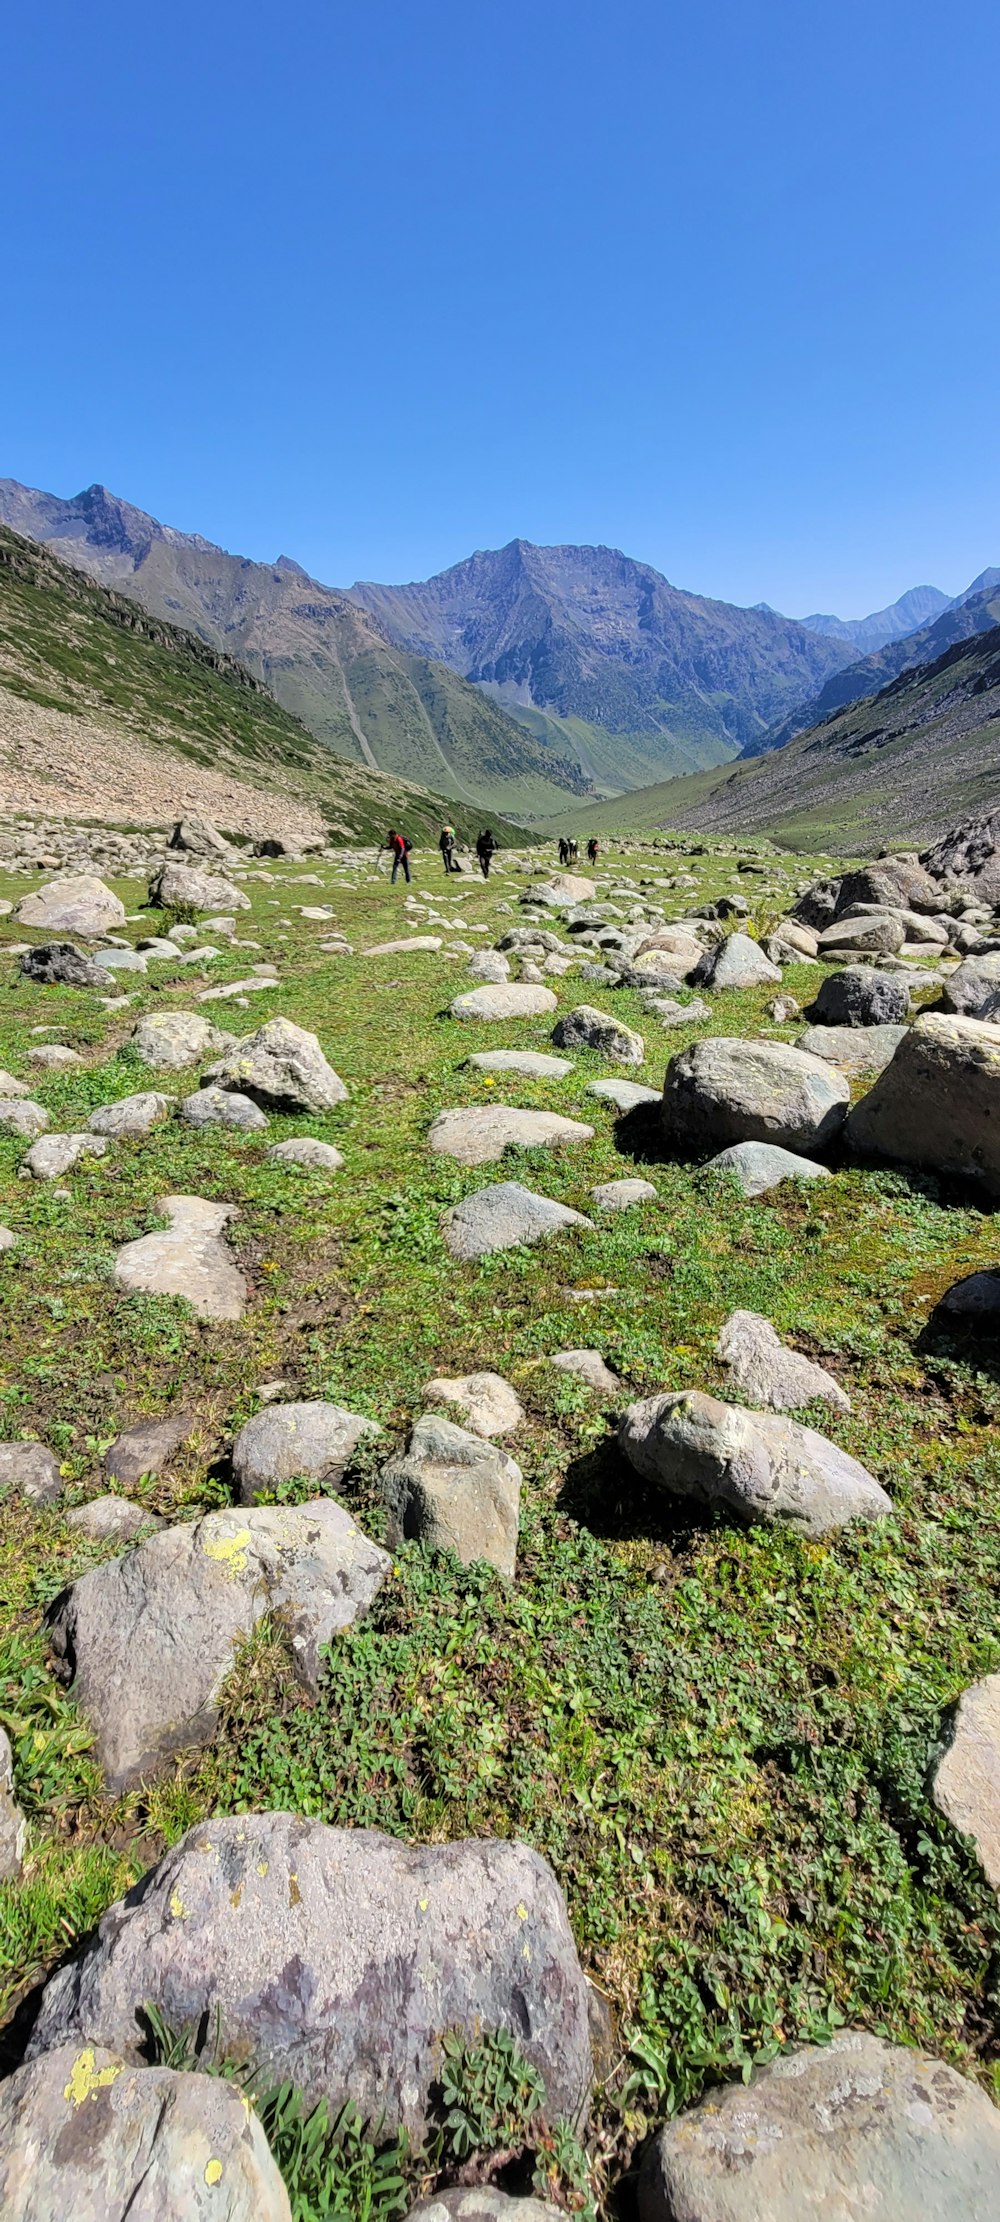 Un grupo de personas caminando por un camino rocoso en un valle